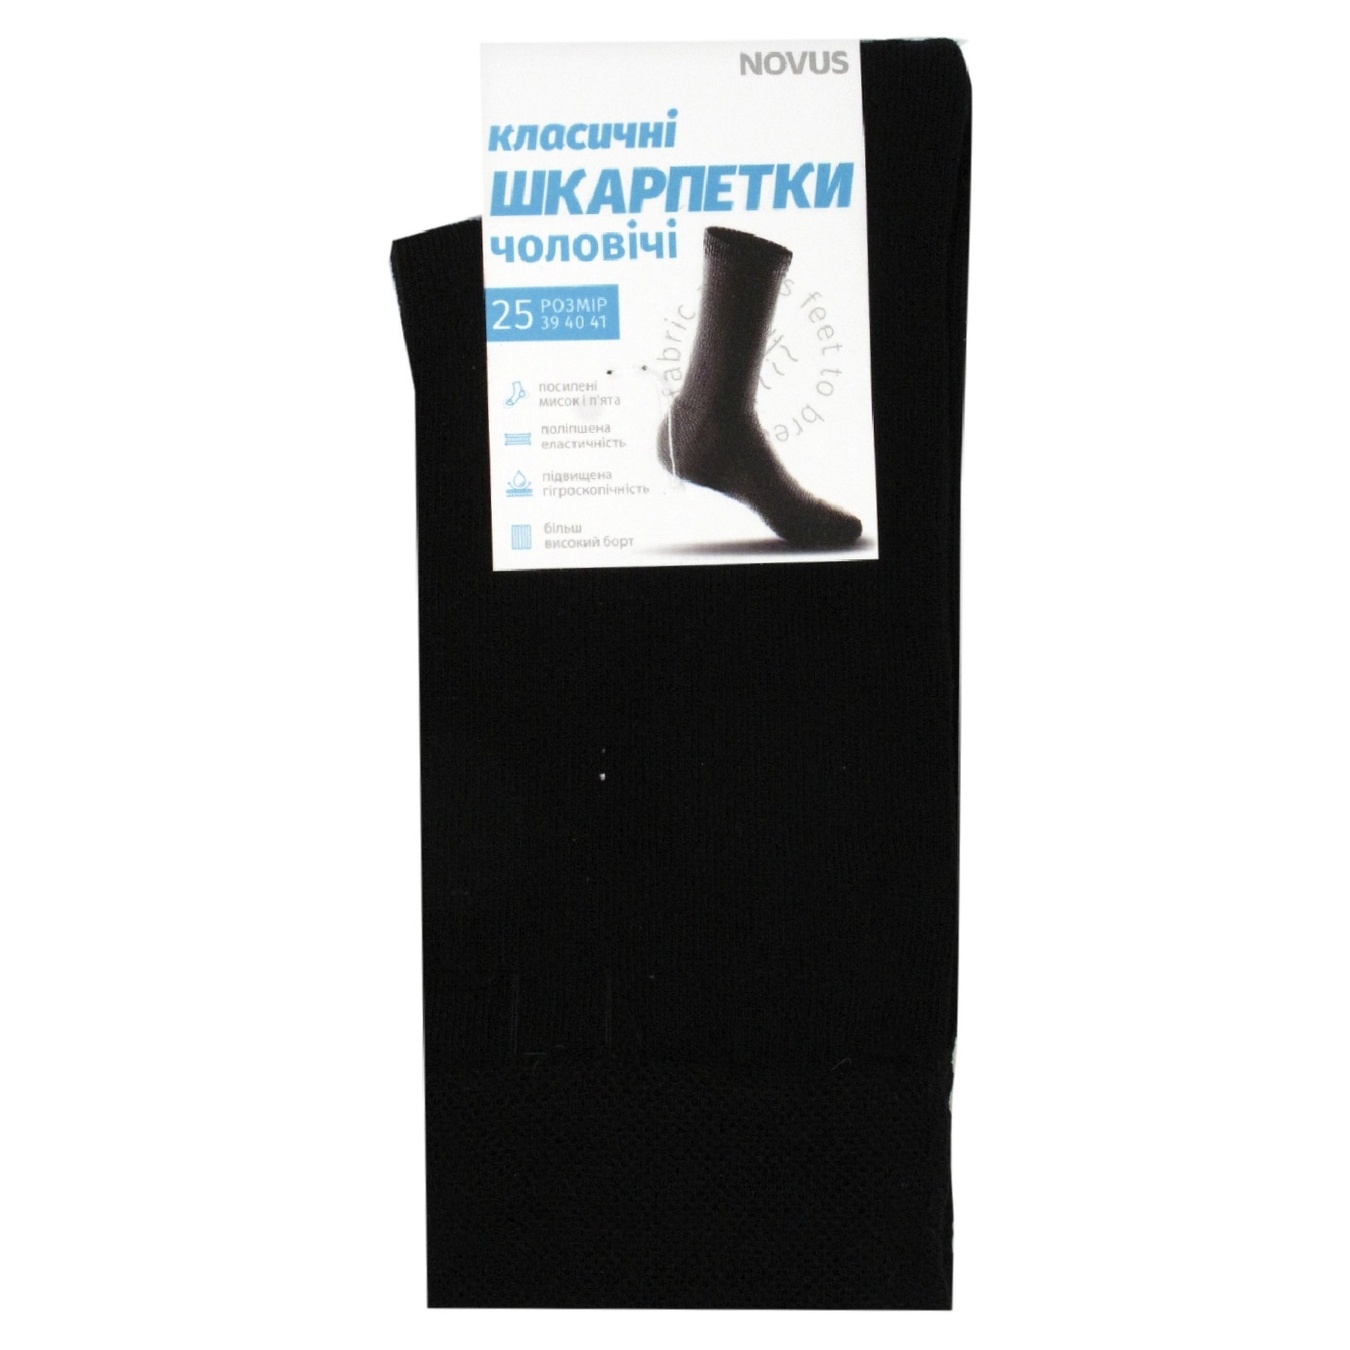 Men's socks NOVUS demi-season classic black size 25